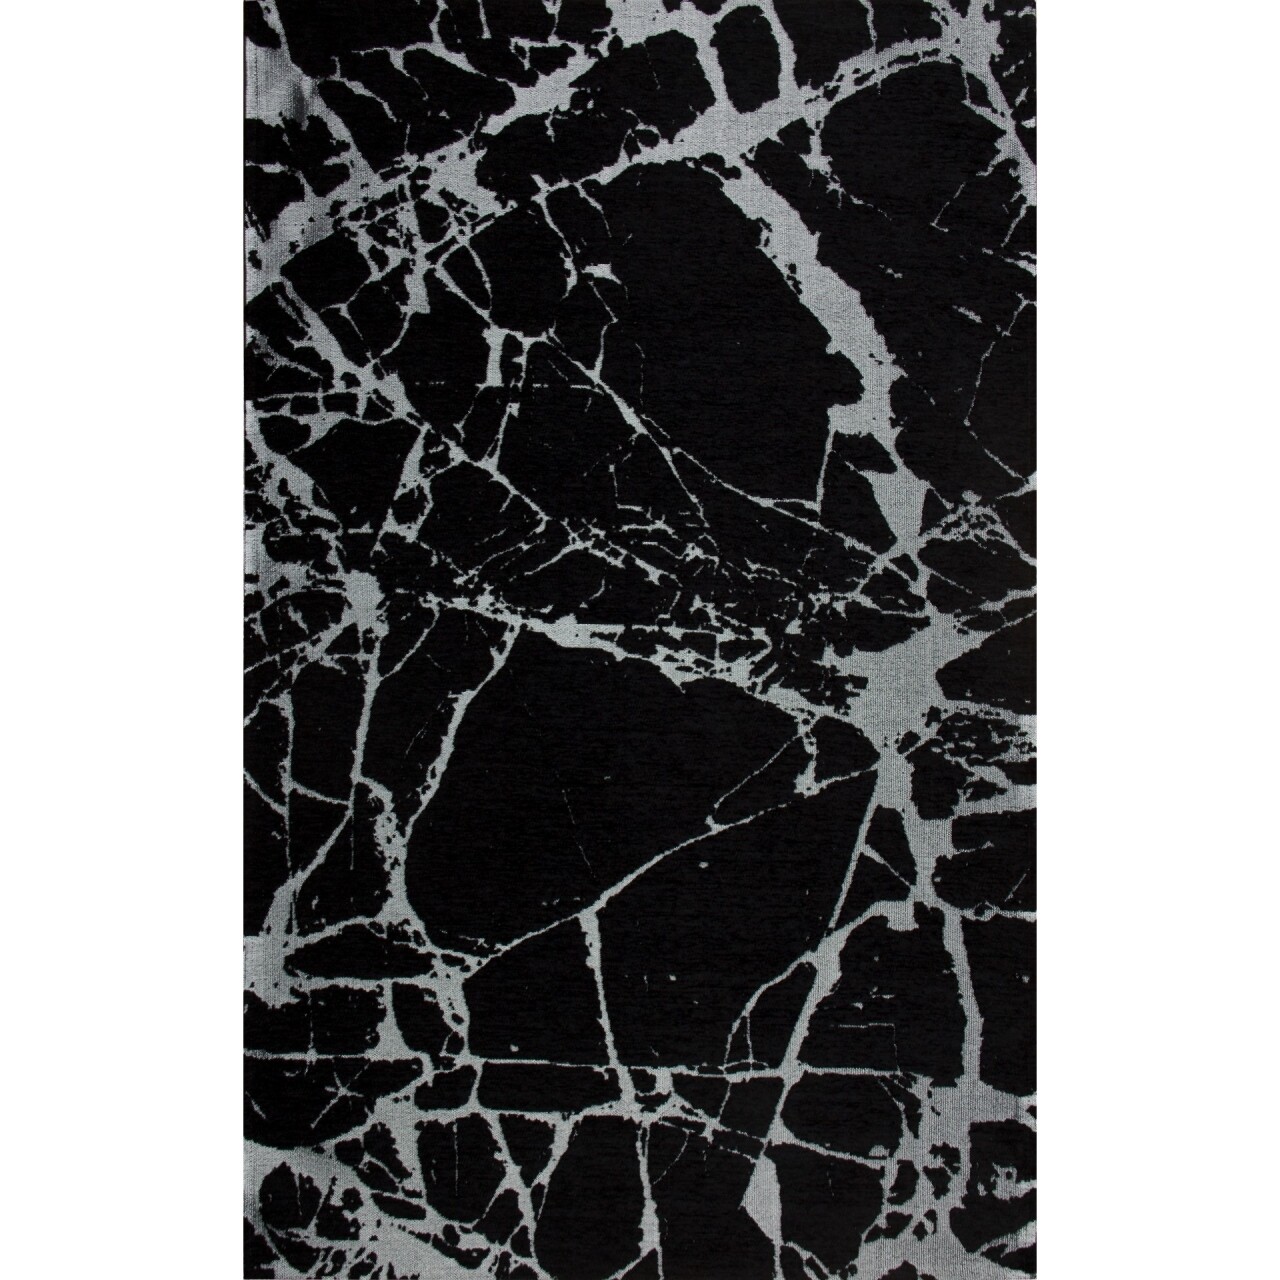 Eko SM 21 - Black Ellenálló szőnyeg, Silver XW, 160x230 cm